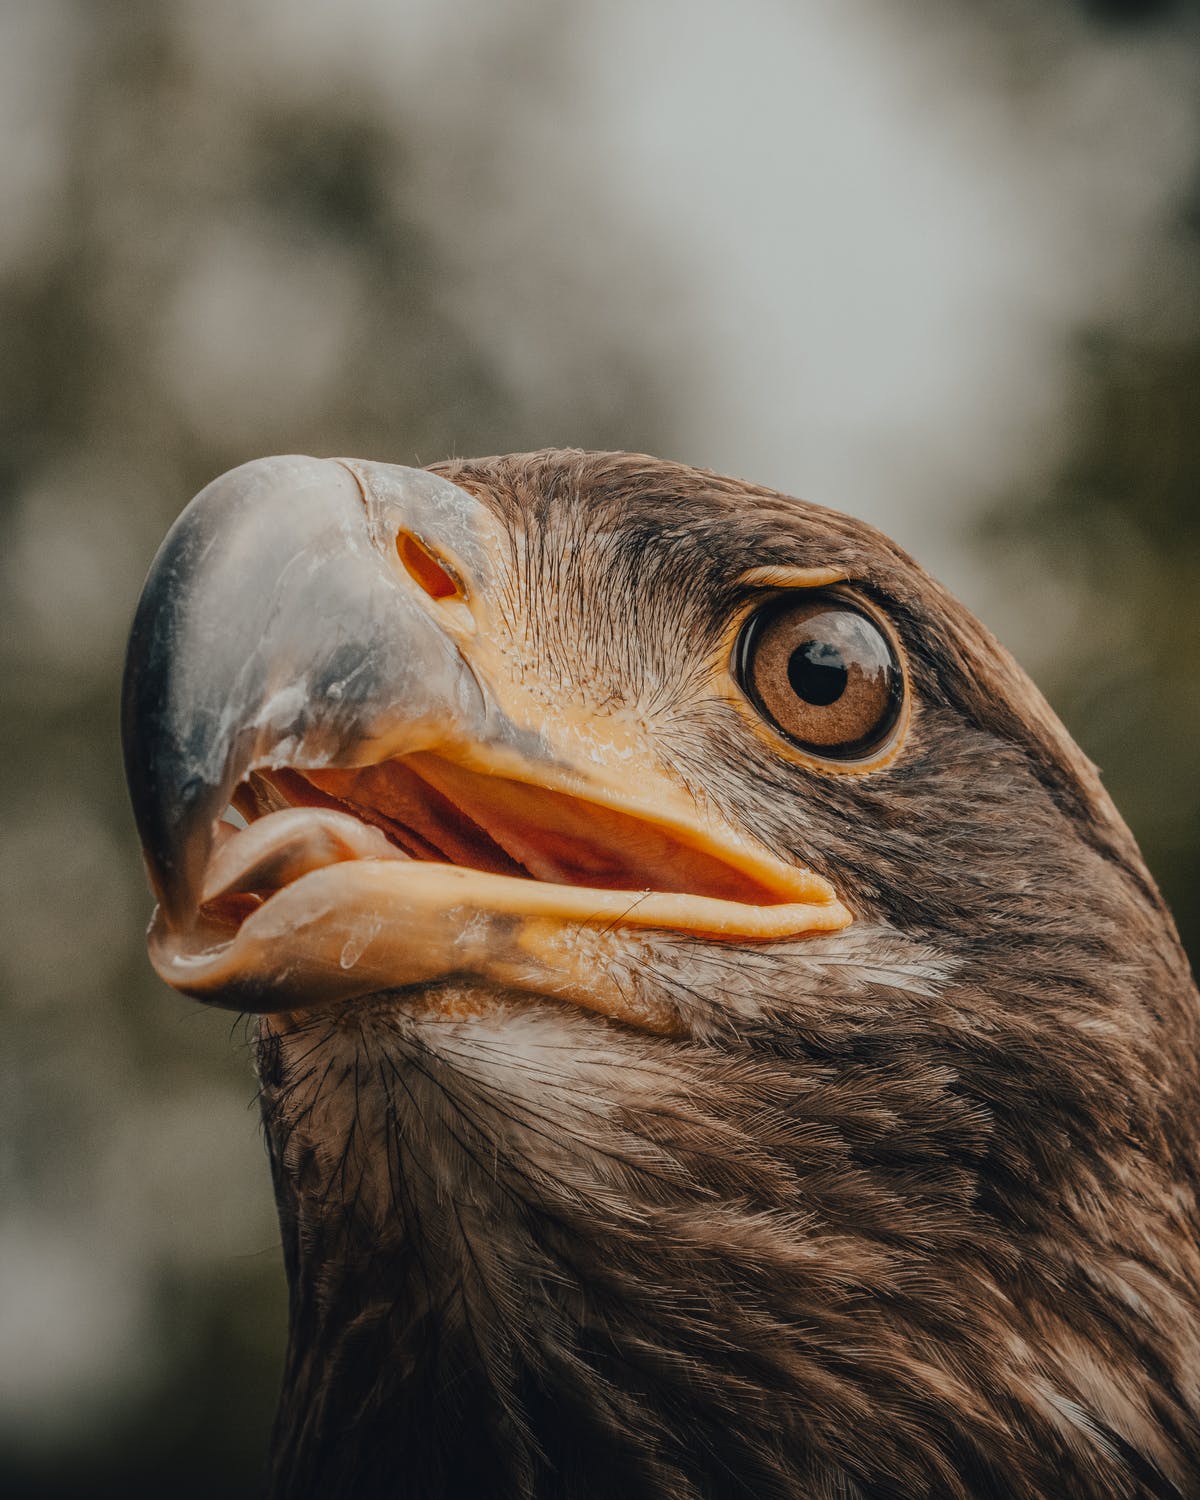 A close up photo of a hawk's head